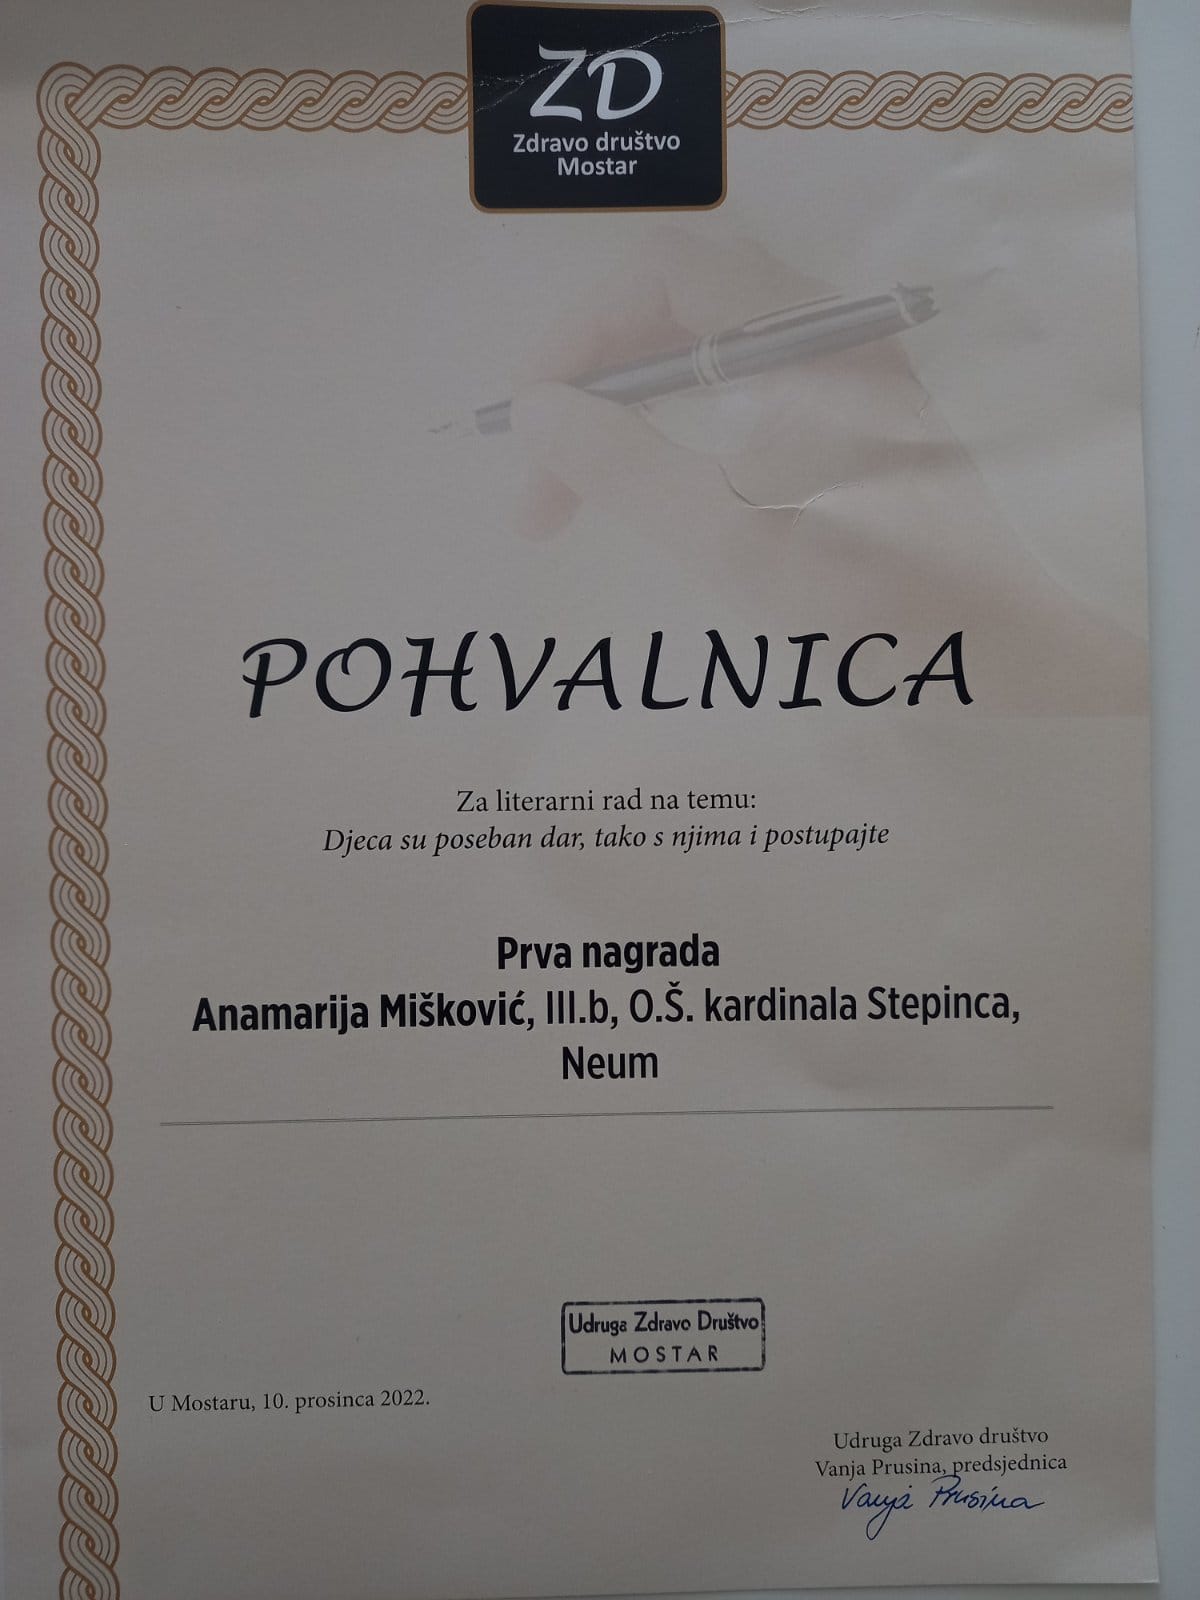 anamarija mišković osvojila 1. mjesto na literarnom natječaju s pjesmom “tata, digni me visoko”